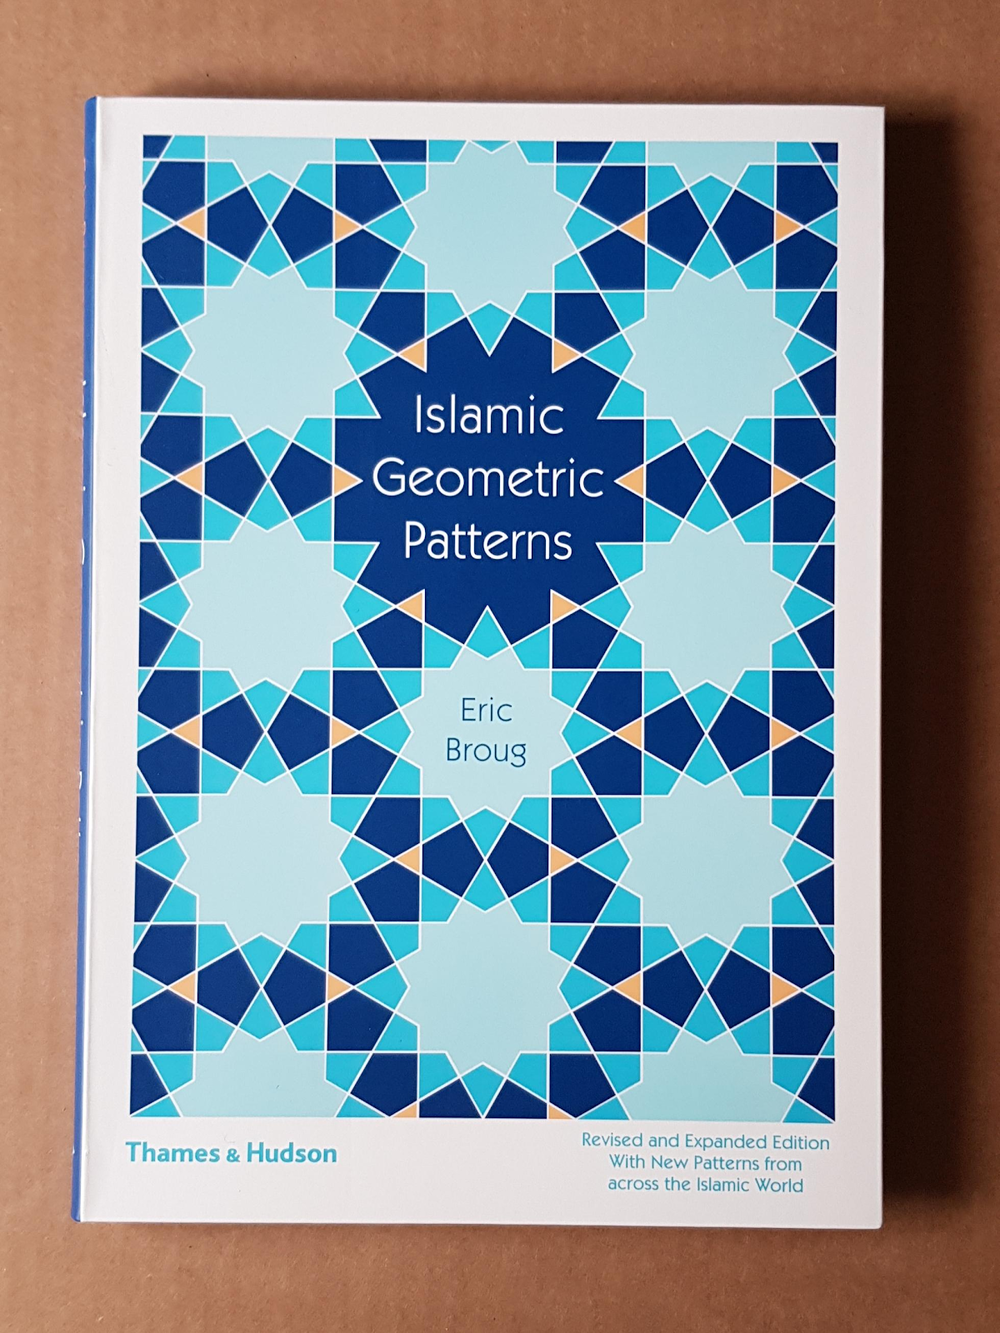 Eric Broug se especializa en diseño islámico, como puedes ver en la portada de su libro.